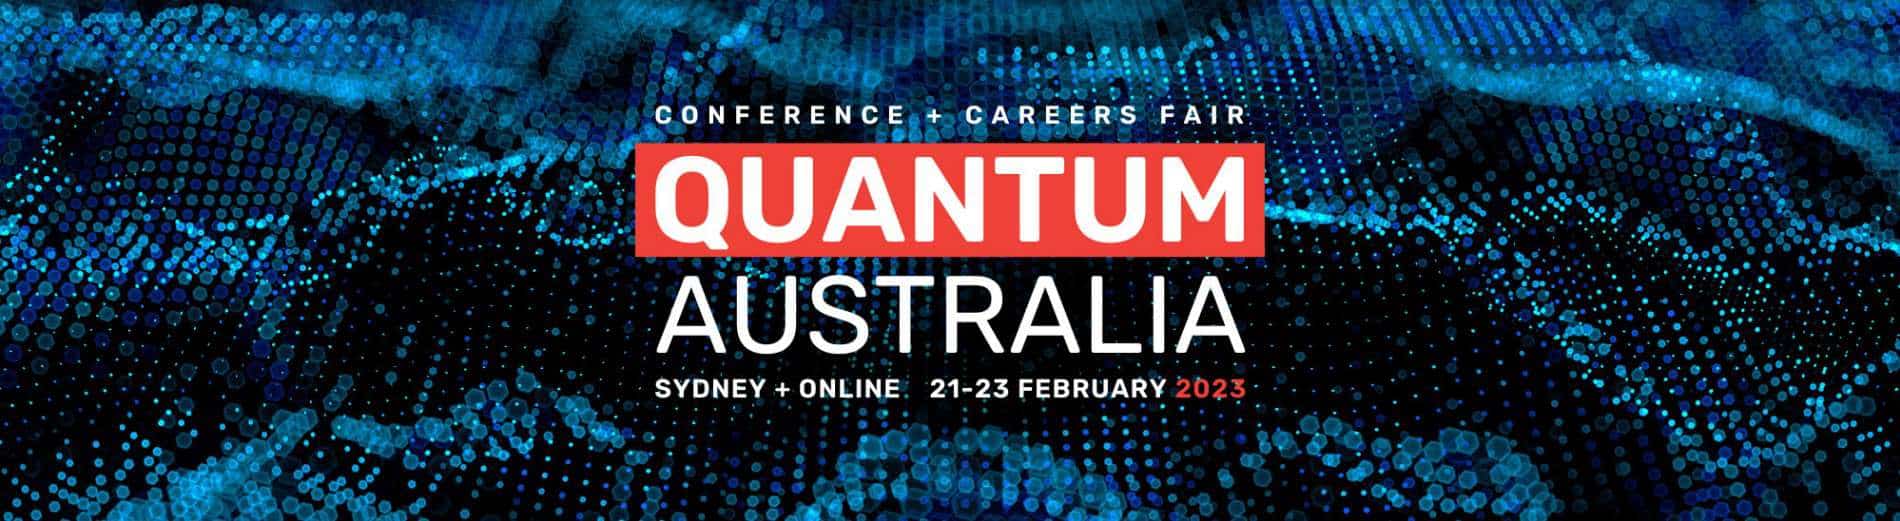 Quantum Australia Conference and Careers Fair 2023